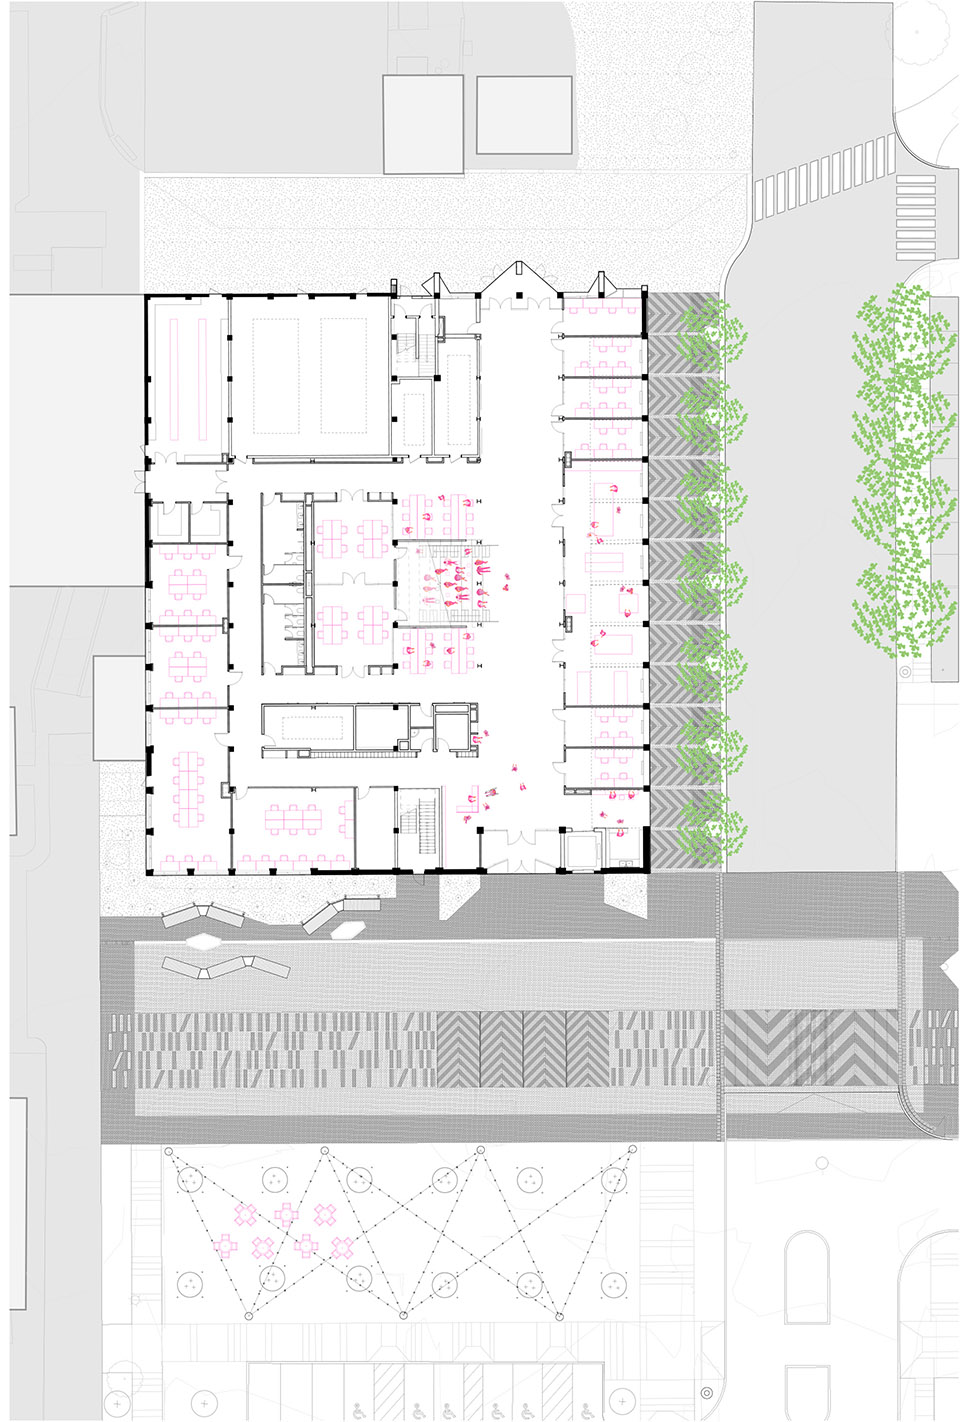 宾西法尼亚大学创新中心/（因为图片更新，故文章提前）尖角形的公共空间提供交流场所，让想法成为现实。-99